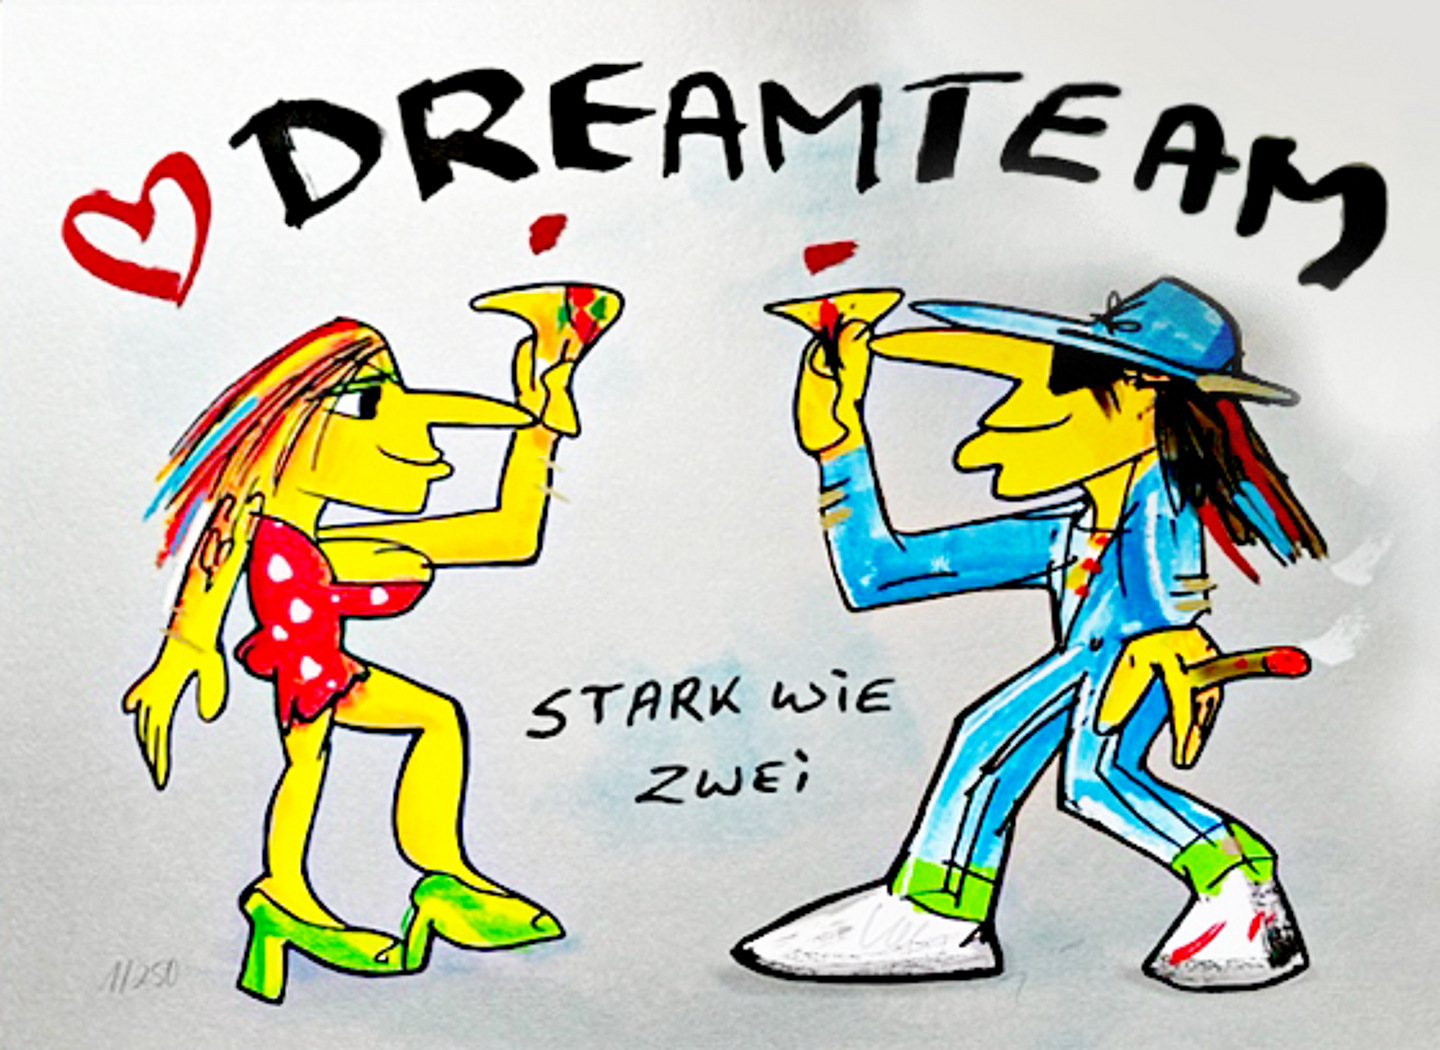  Udo Lindenberg DREAMTEAM - STARK WIE ZWEI - Silver Edition - original Siebdruck, handsigniert 